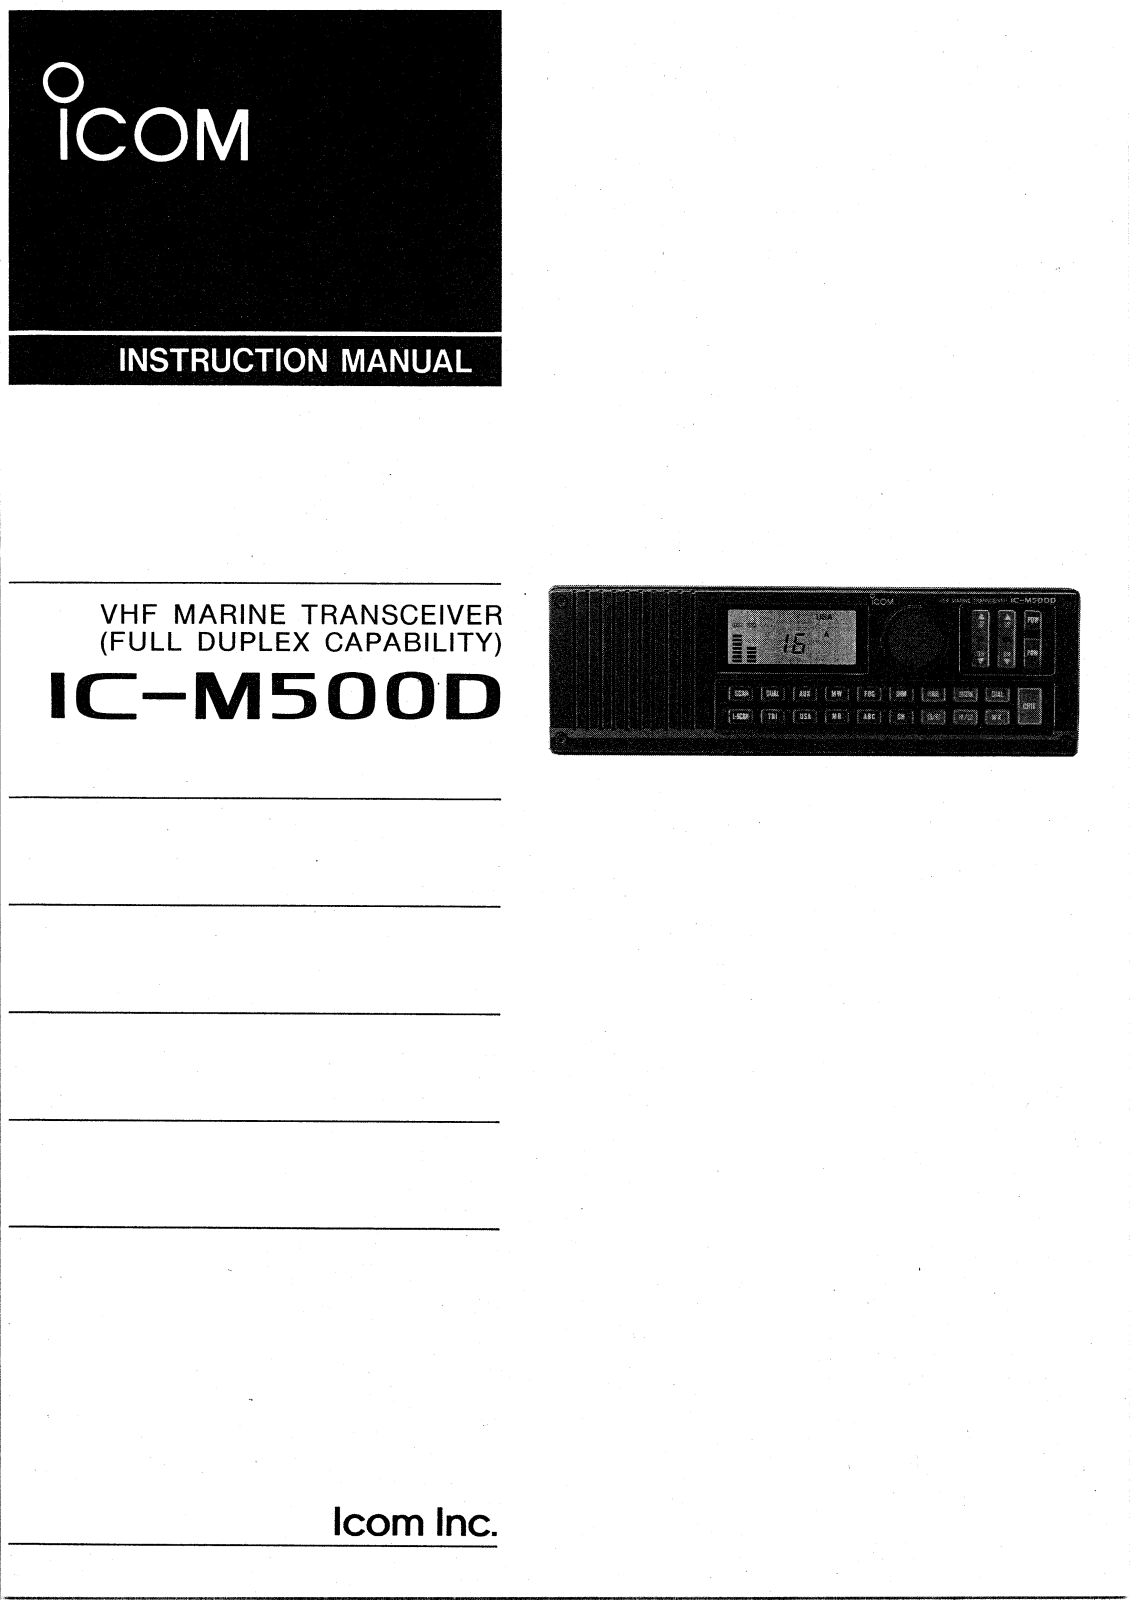 Icom IC-M500D User Manual